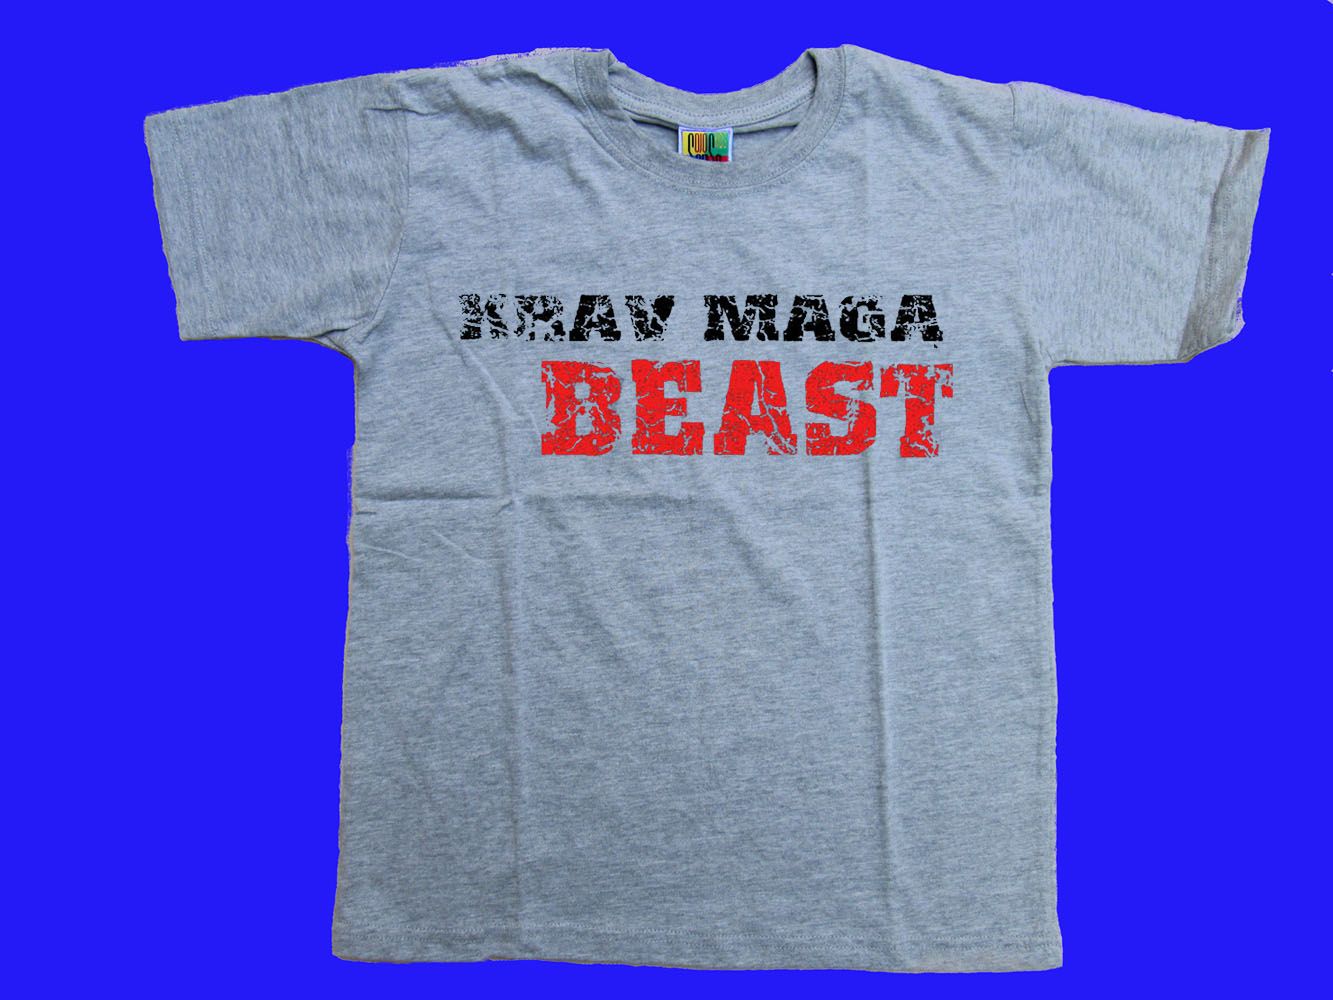 Krav maga Beast close combat children sizes gray t-shirt